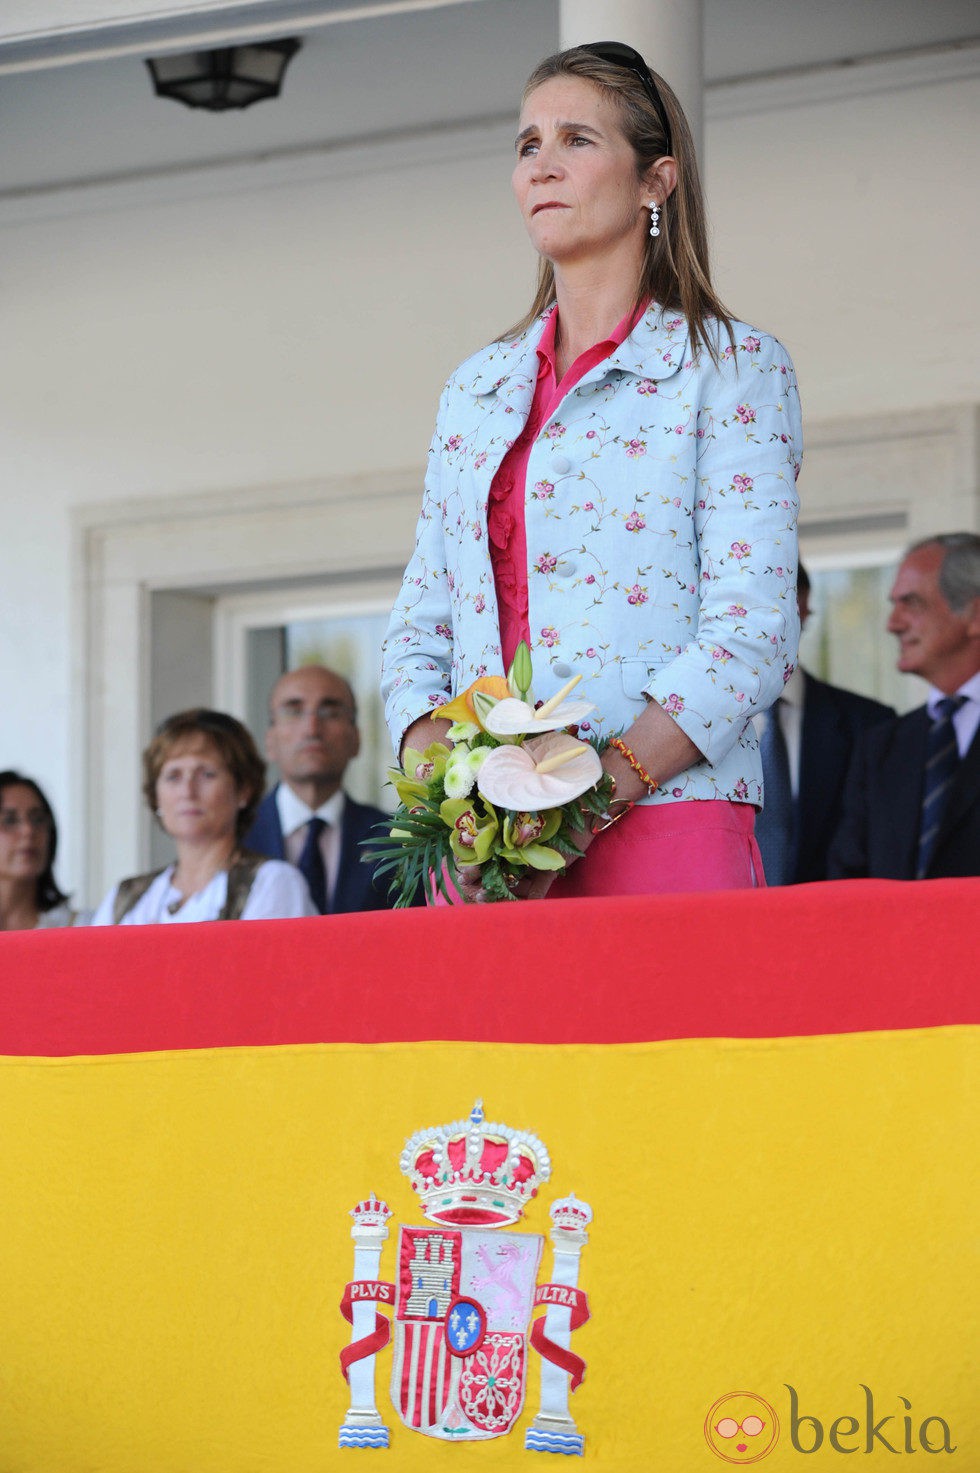 La Infanta Elena presidiendo el Concurso de Saltos de Madrid